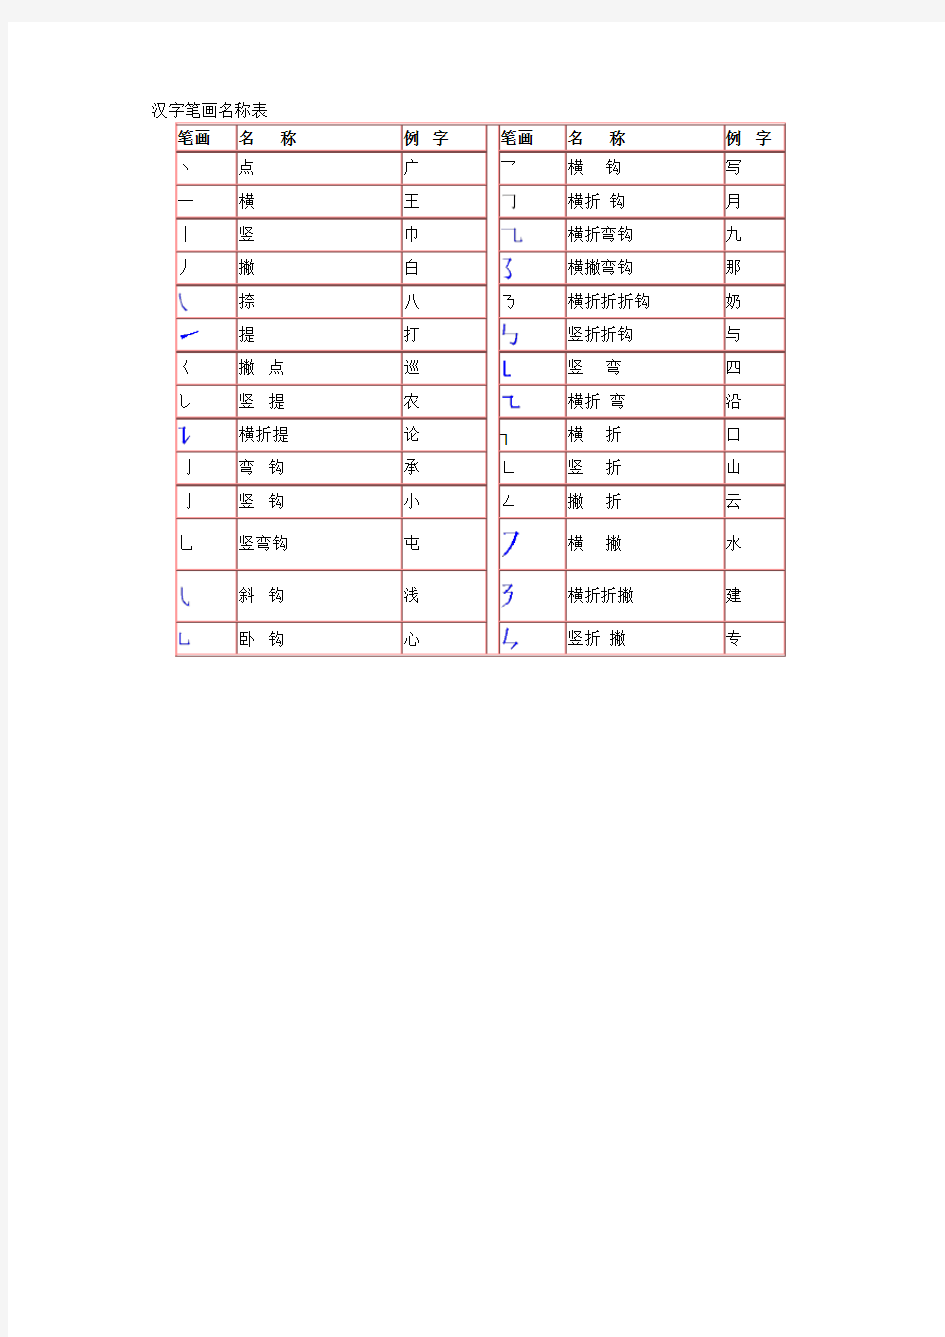 小学1-6年级语文数学试题库汉字笔画名称表